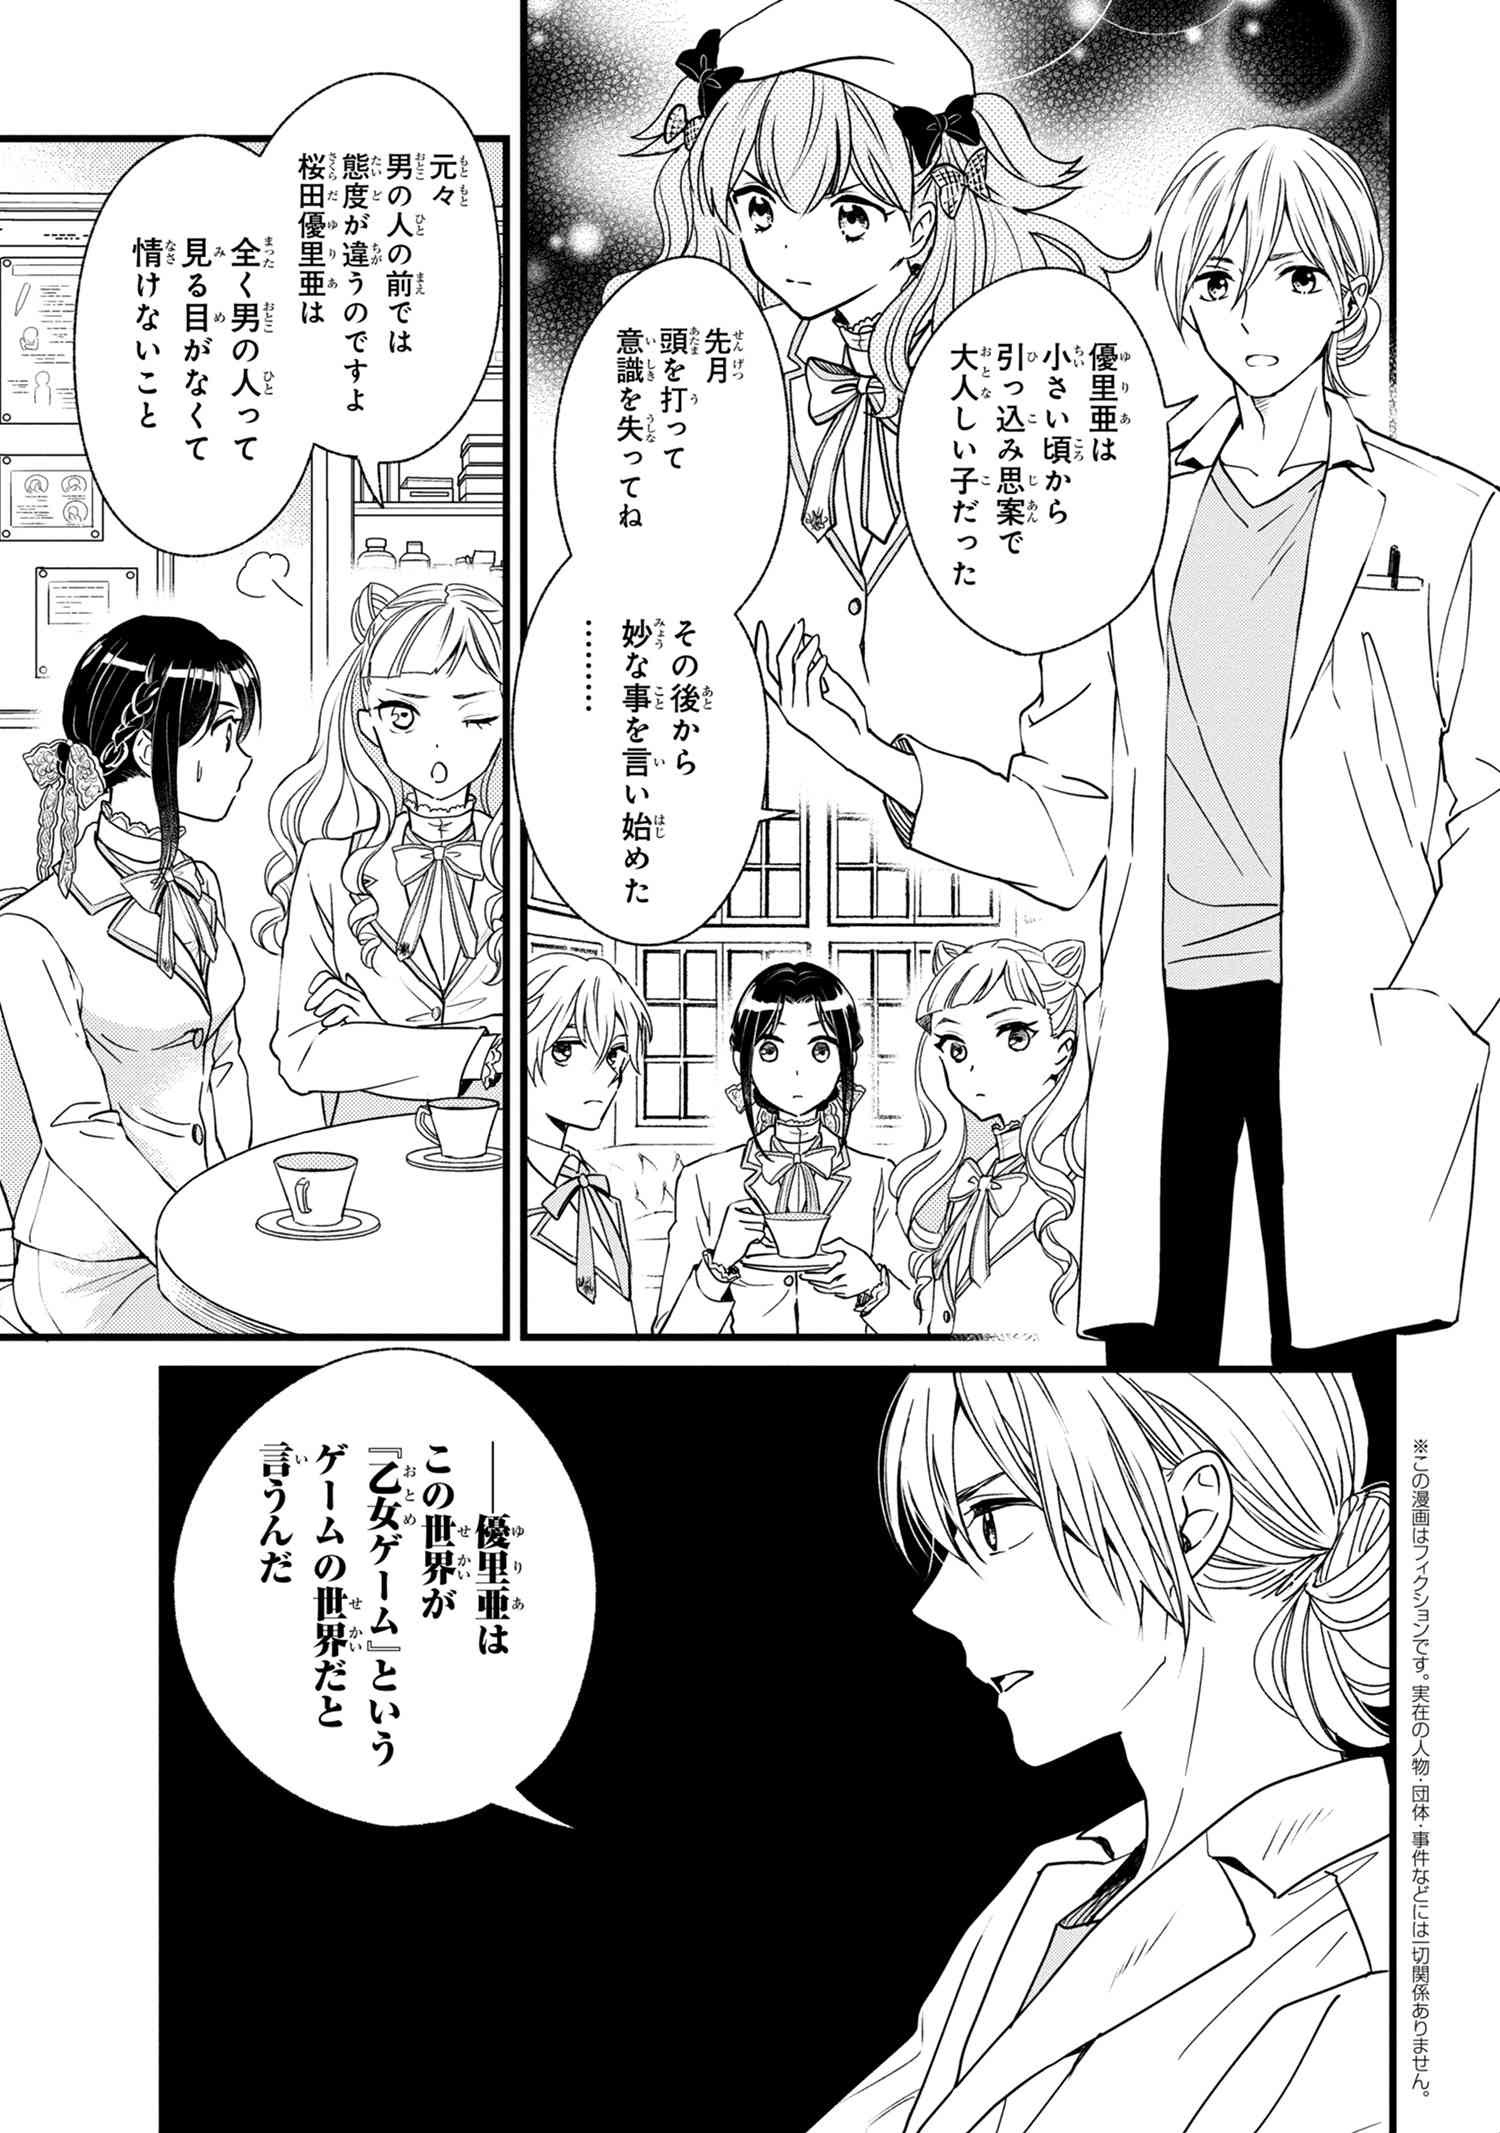 Reiko no Fuugi Akuyaku Reijou to Yobarete imasu ga, tada no Binbou Musume desu - Chapter 3-1 - Page 1